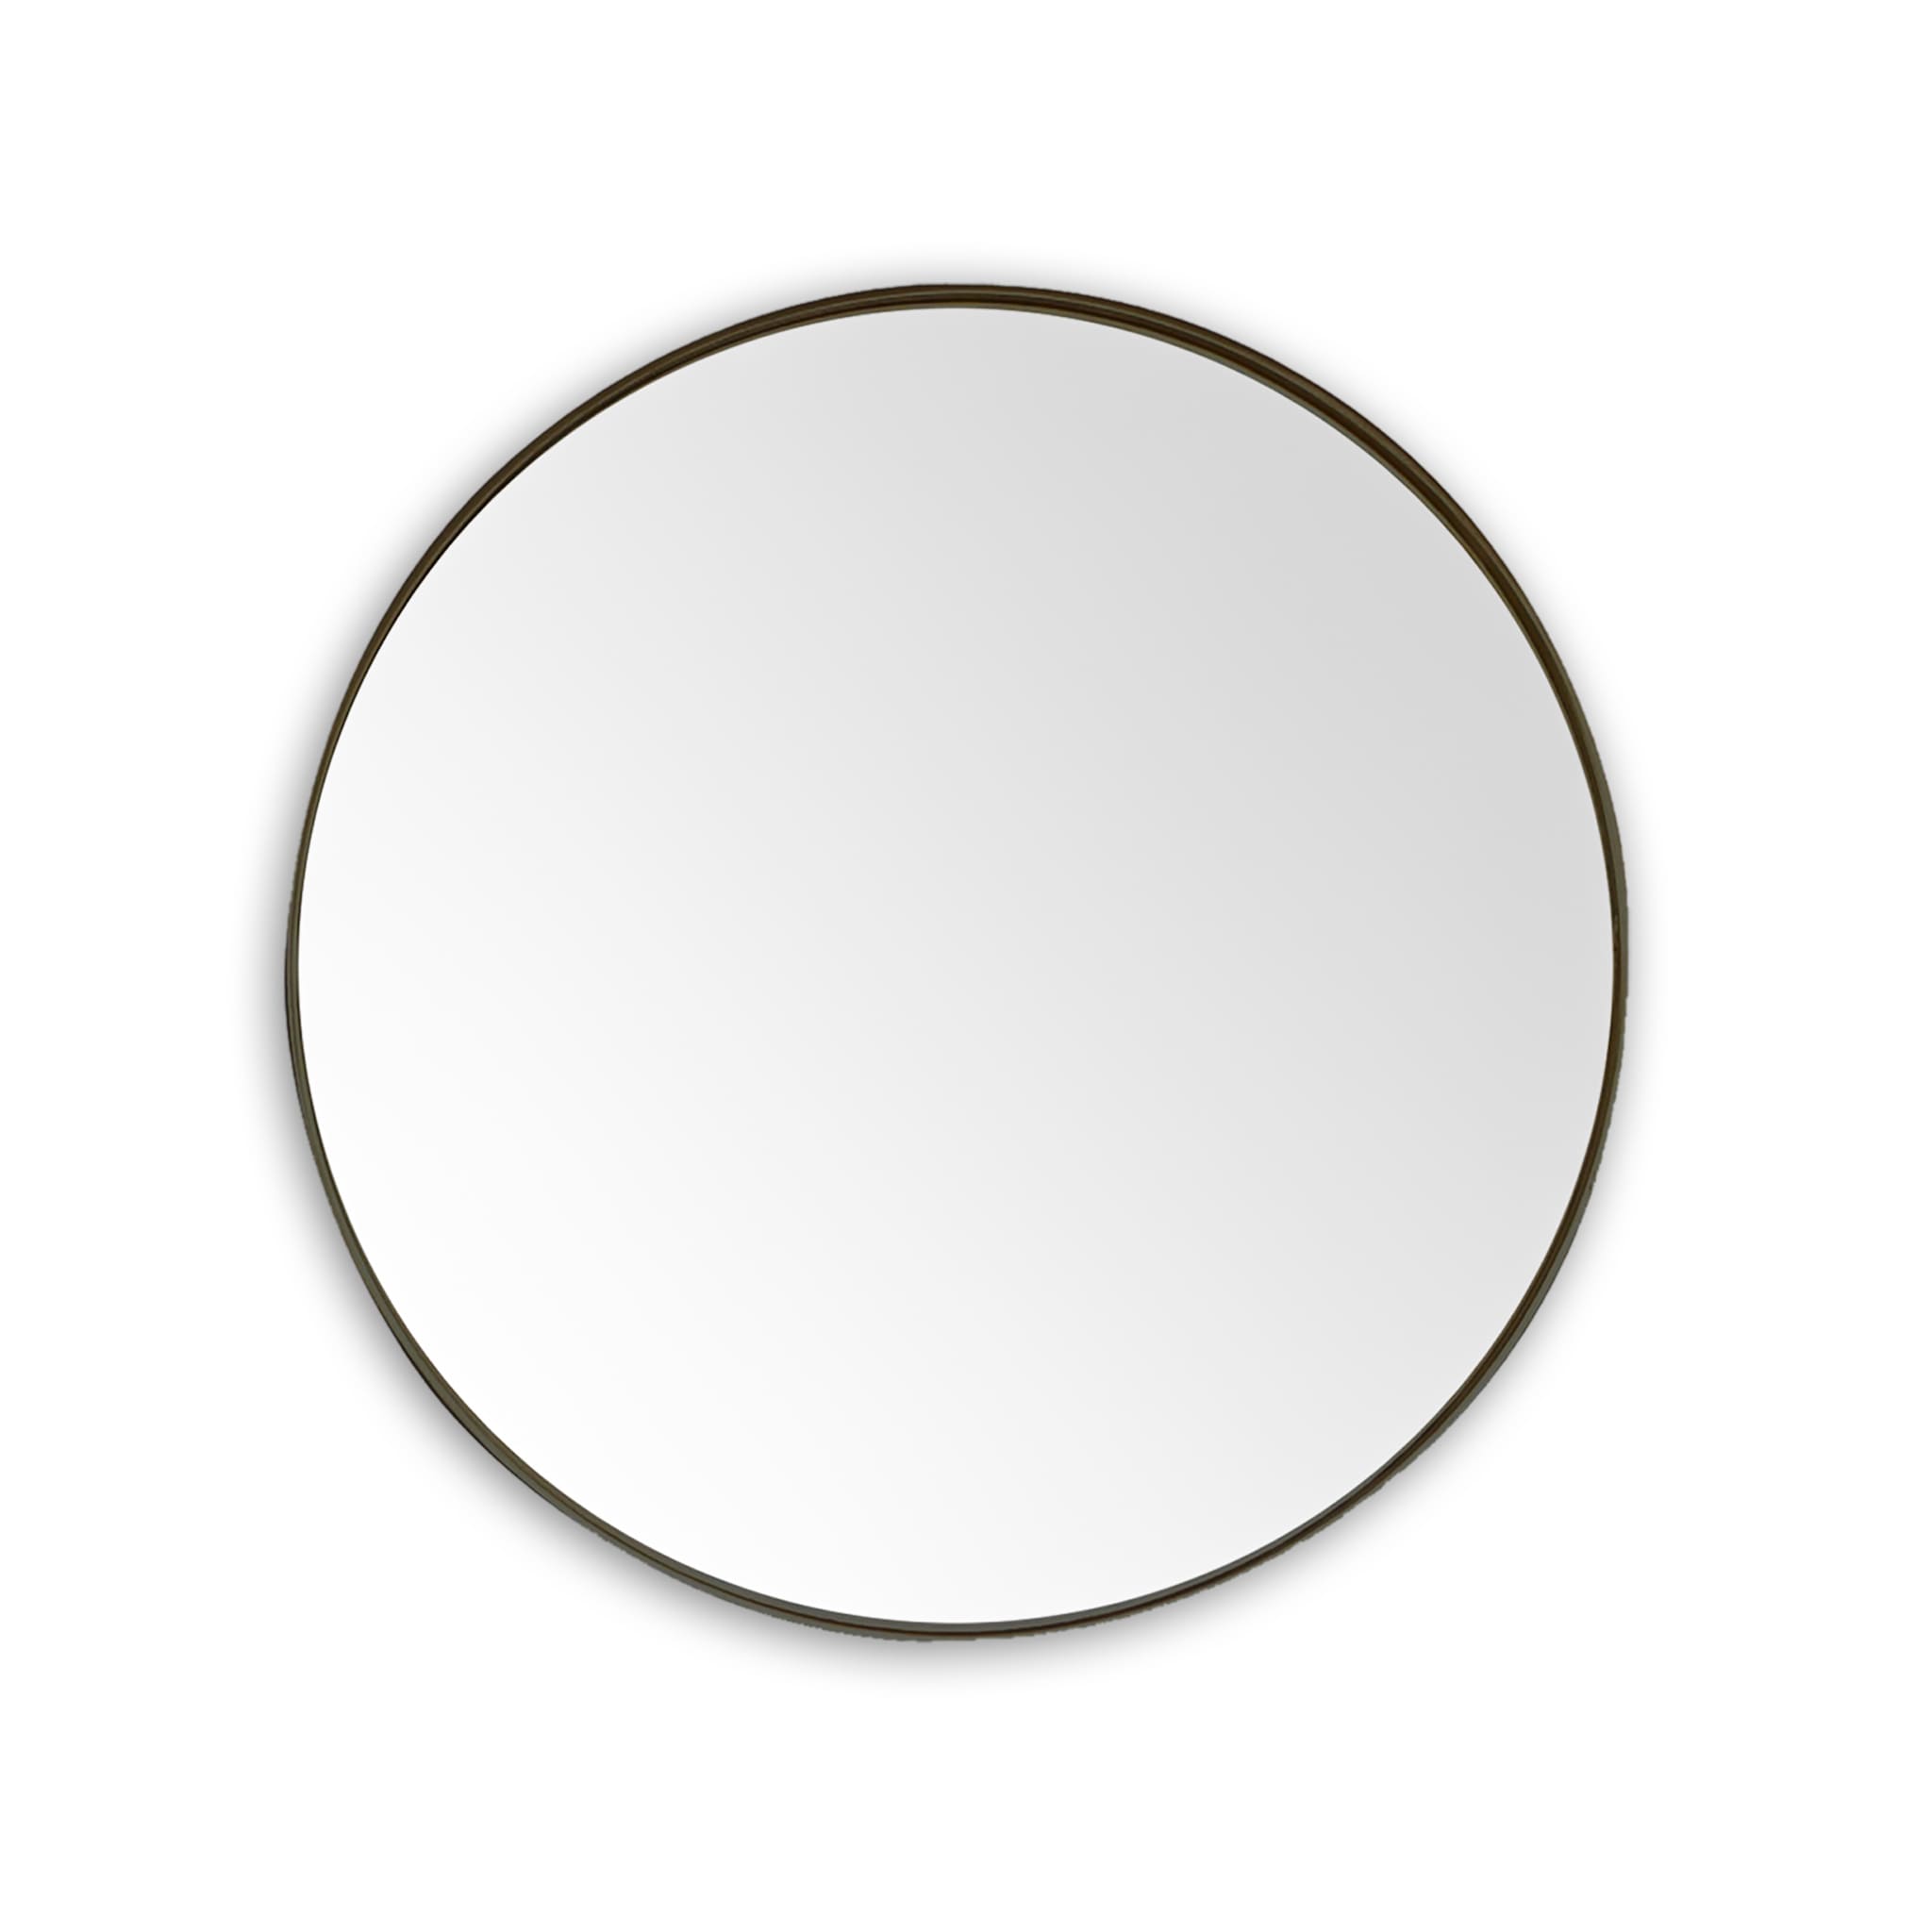  Bathroom Round Mirror Homelero 30"  #size_30"  #color_black